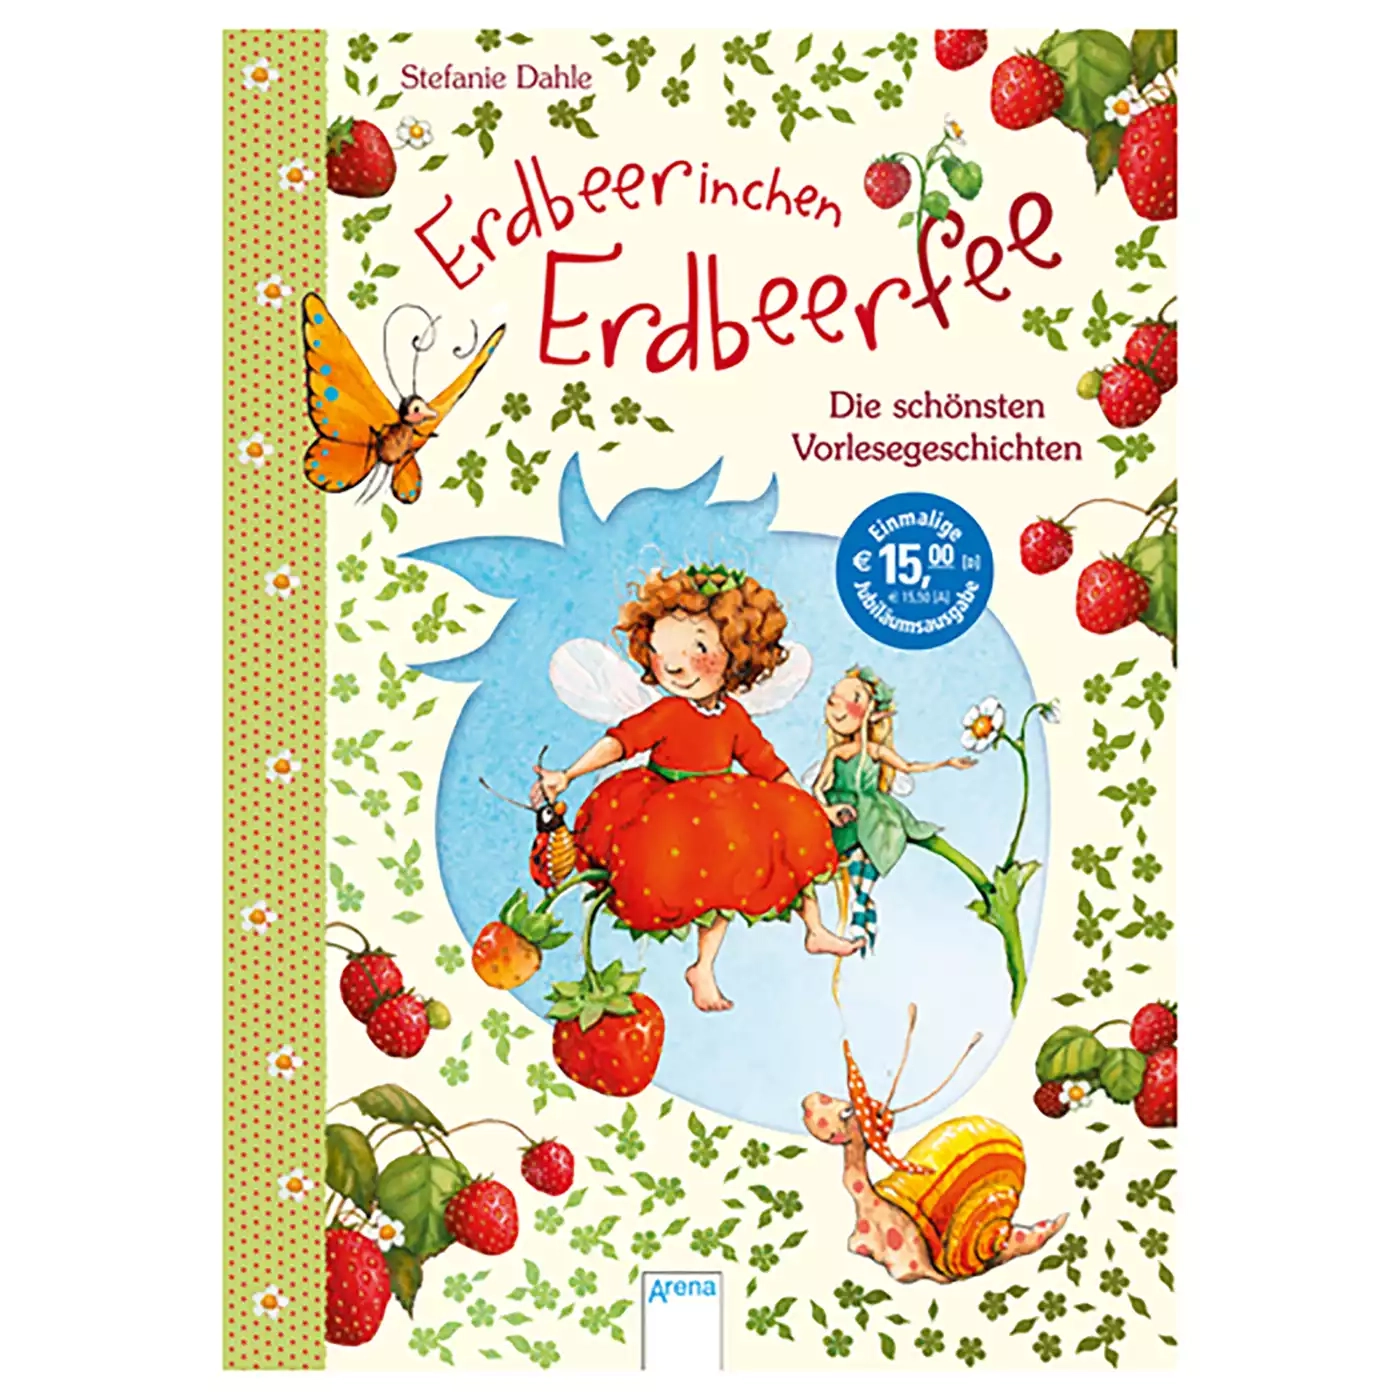 Erdbeerinchen Erdbeerfee - Die schönsten Vorlesegeschichten Arena 2000579397806 1